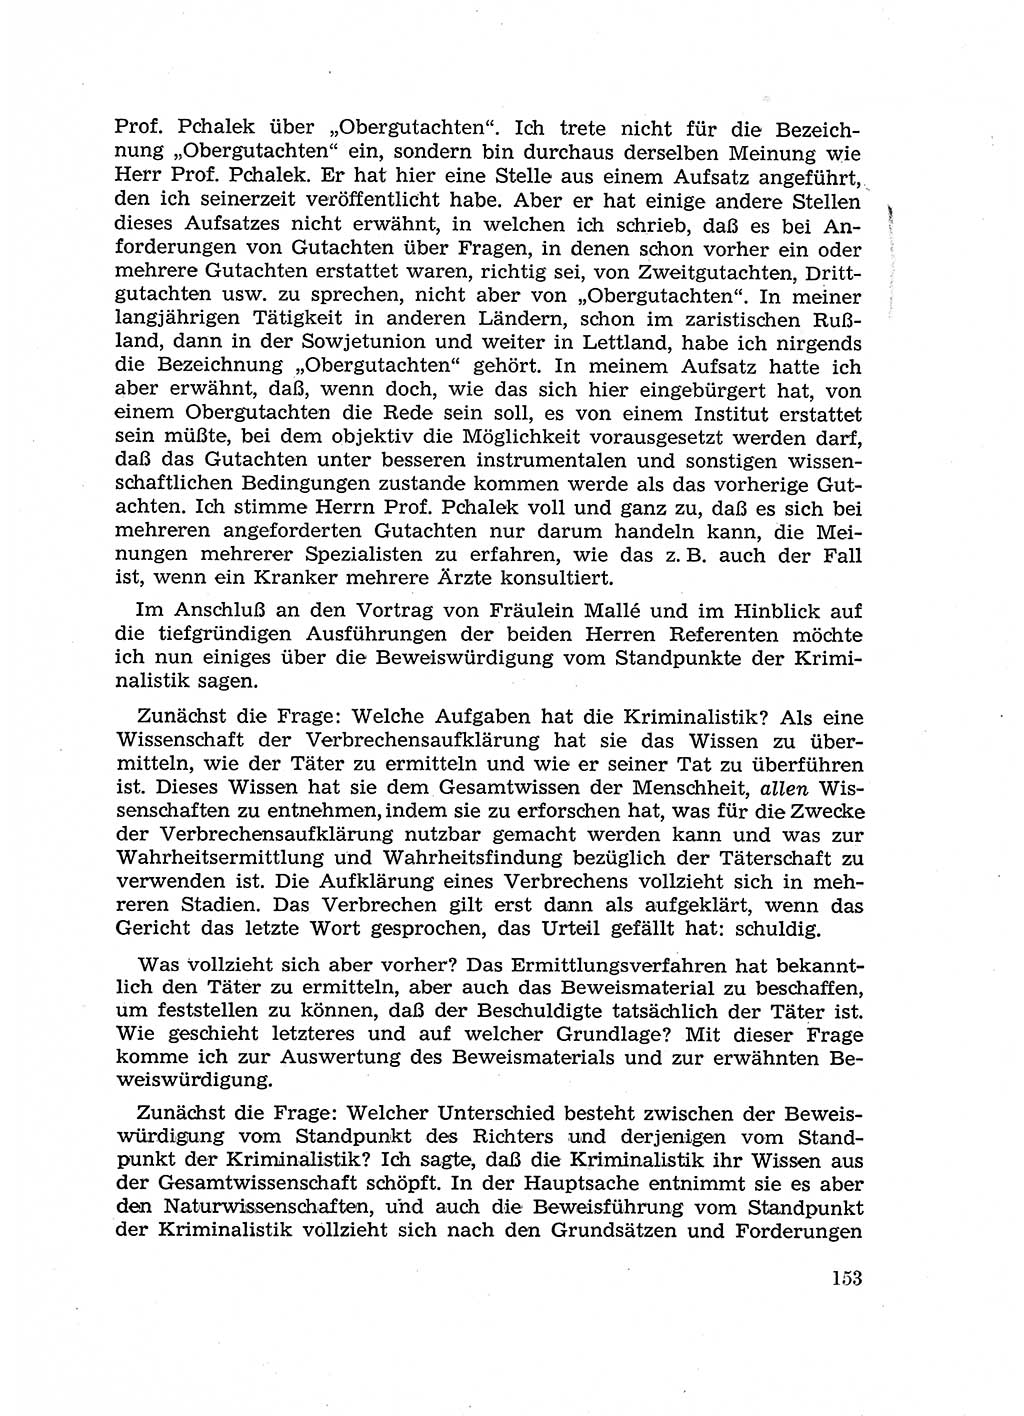 Fragen des Beweisrechts im Strafprozess [Deutsche Demokratische Republik (DDR)] 1956, Seite 153 (Fr. BeweisR. Str.-Proz. DDR 1956, S. 153)